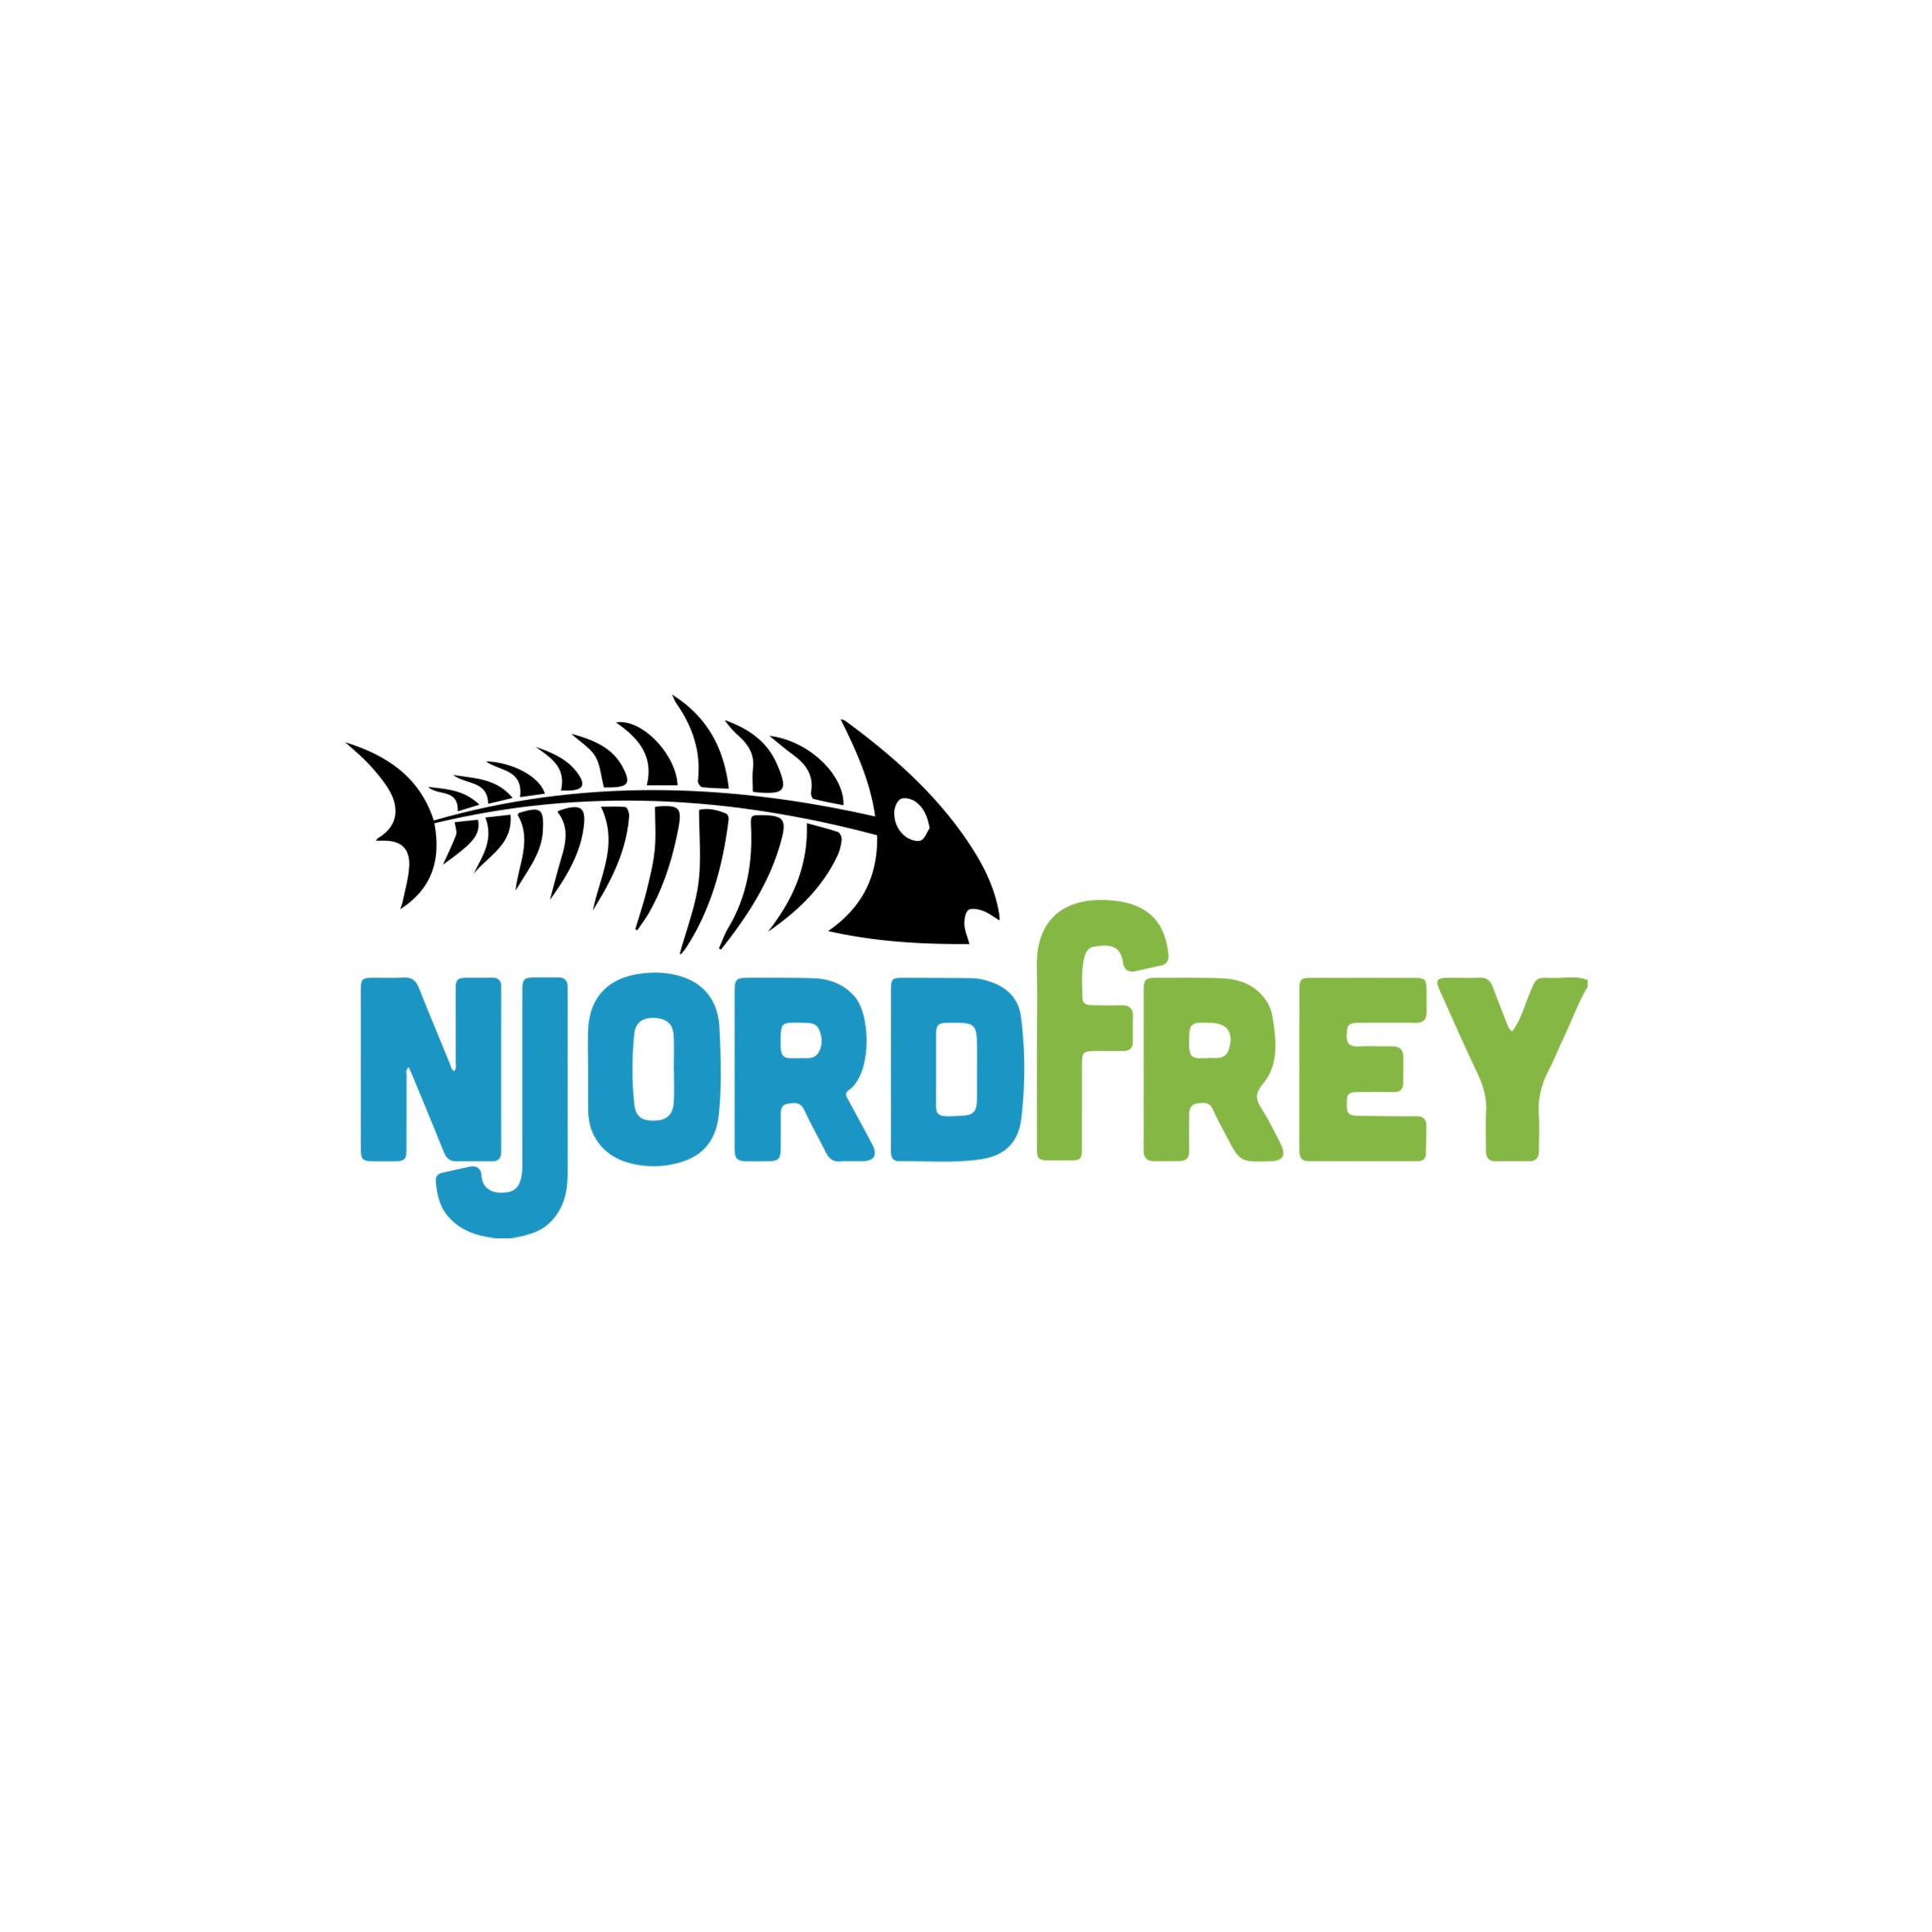 NjordFrey